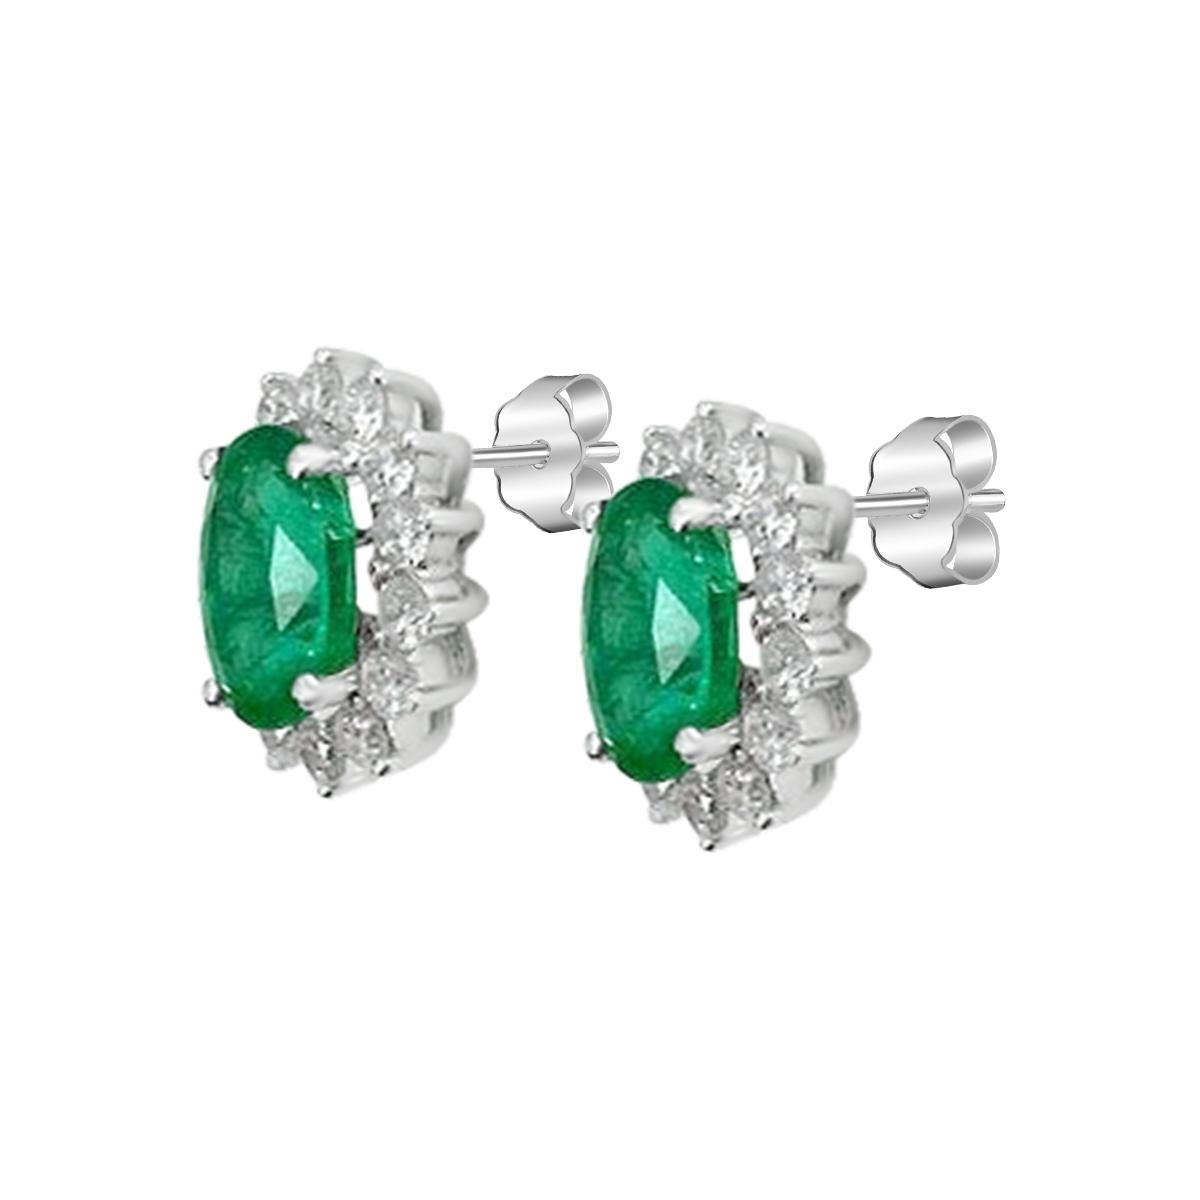 Dieses zeitlos elegante Paar Ohrstecker verfügt über einen sattgrünen 8 x 6 mm großen Smaragd im Ovalschliff, der von Diamanten umgeben ist. Die Smaragde sind eine gleichmäßige und gut gesättigte  Grüner Farbton, der an üppiges Sommerlaub erinnert.